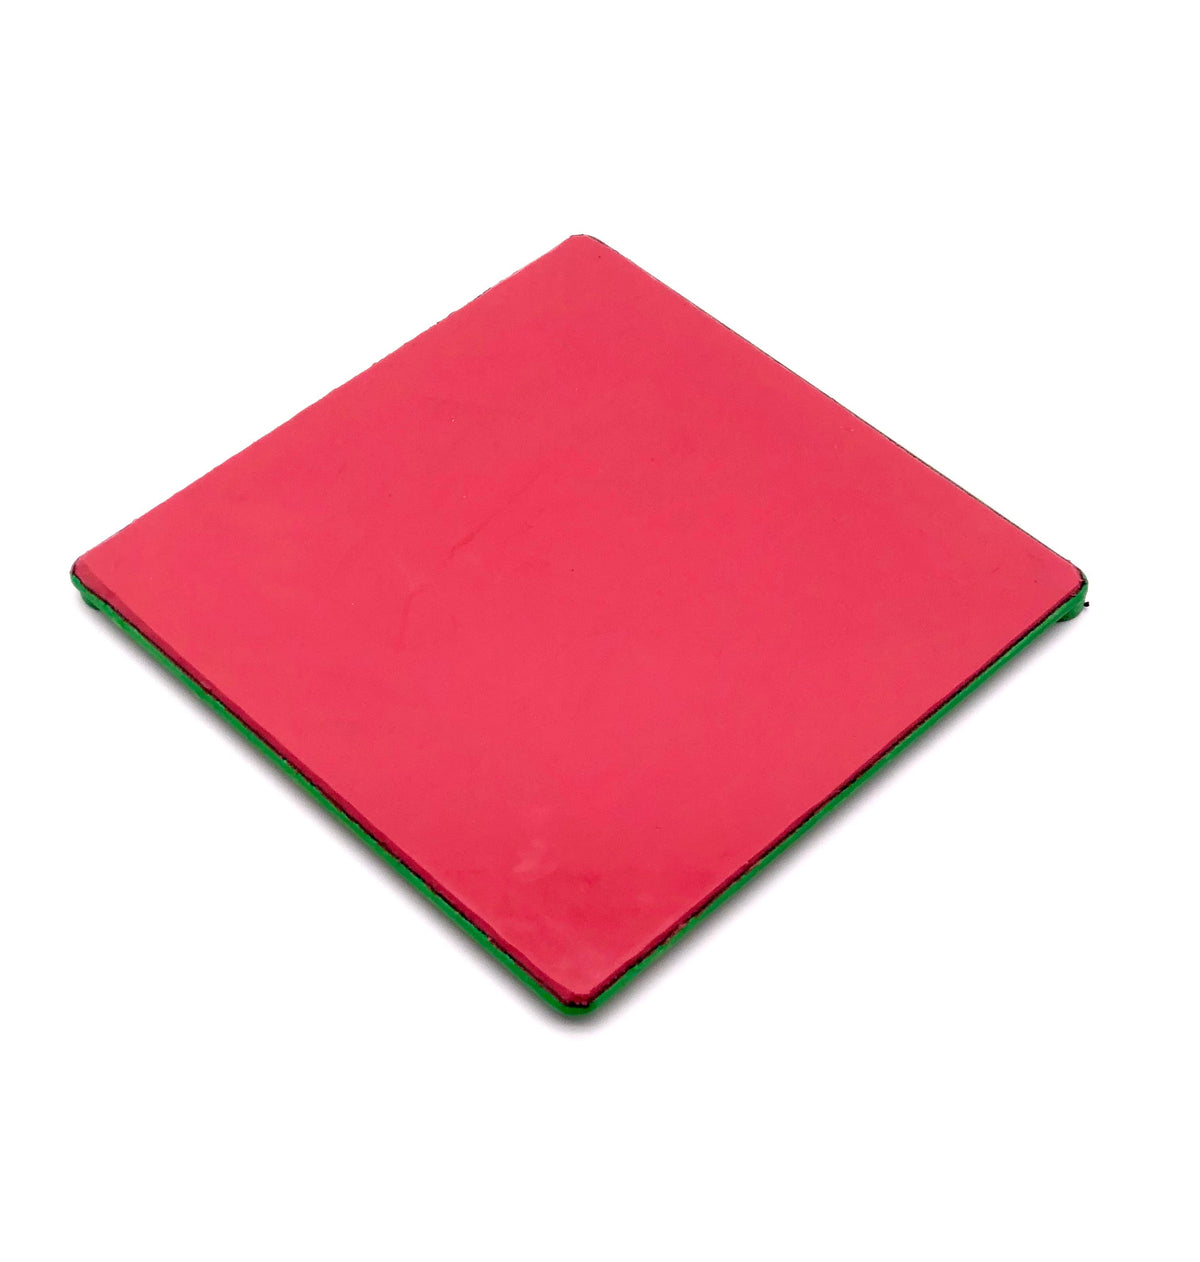 DiamondCore 7.5" Square Colored StickyBat